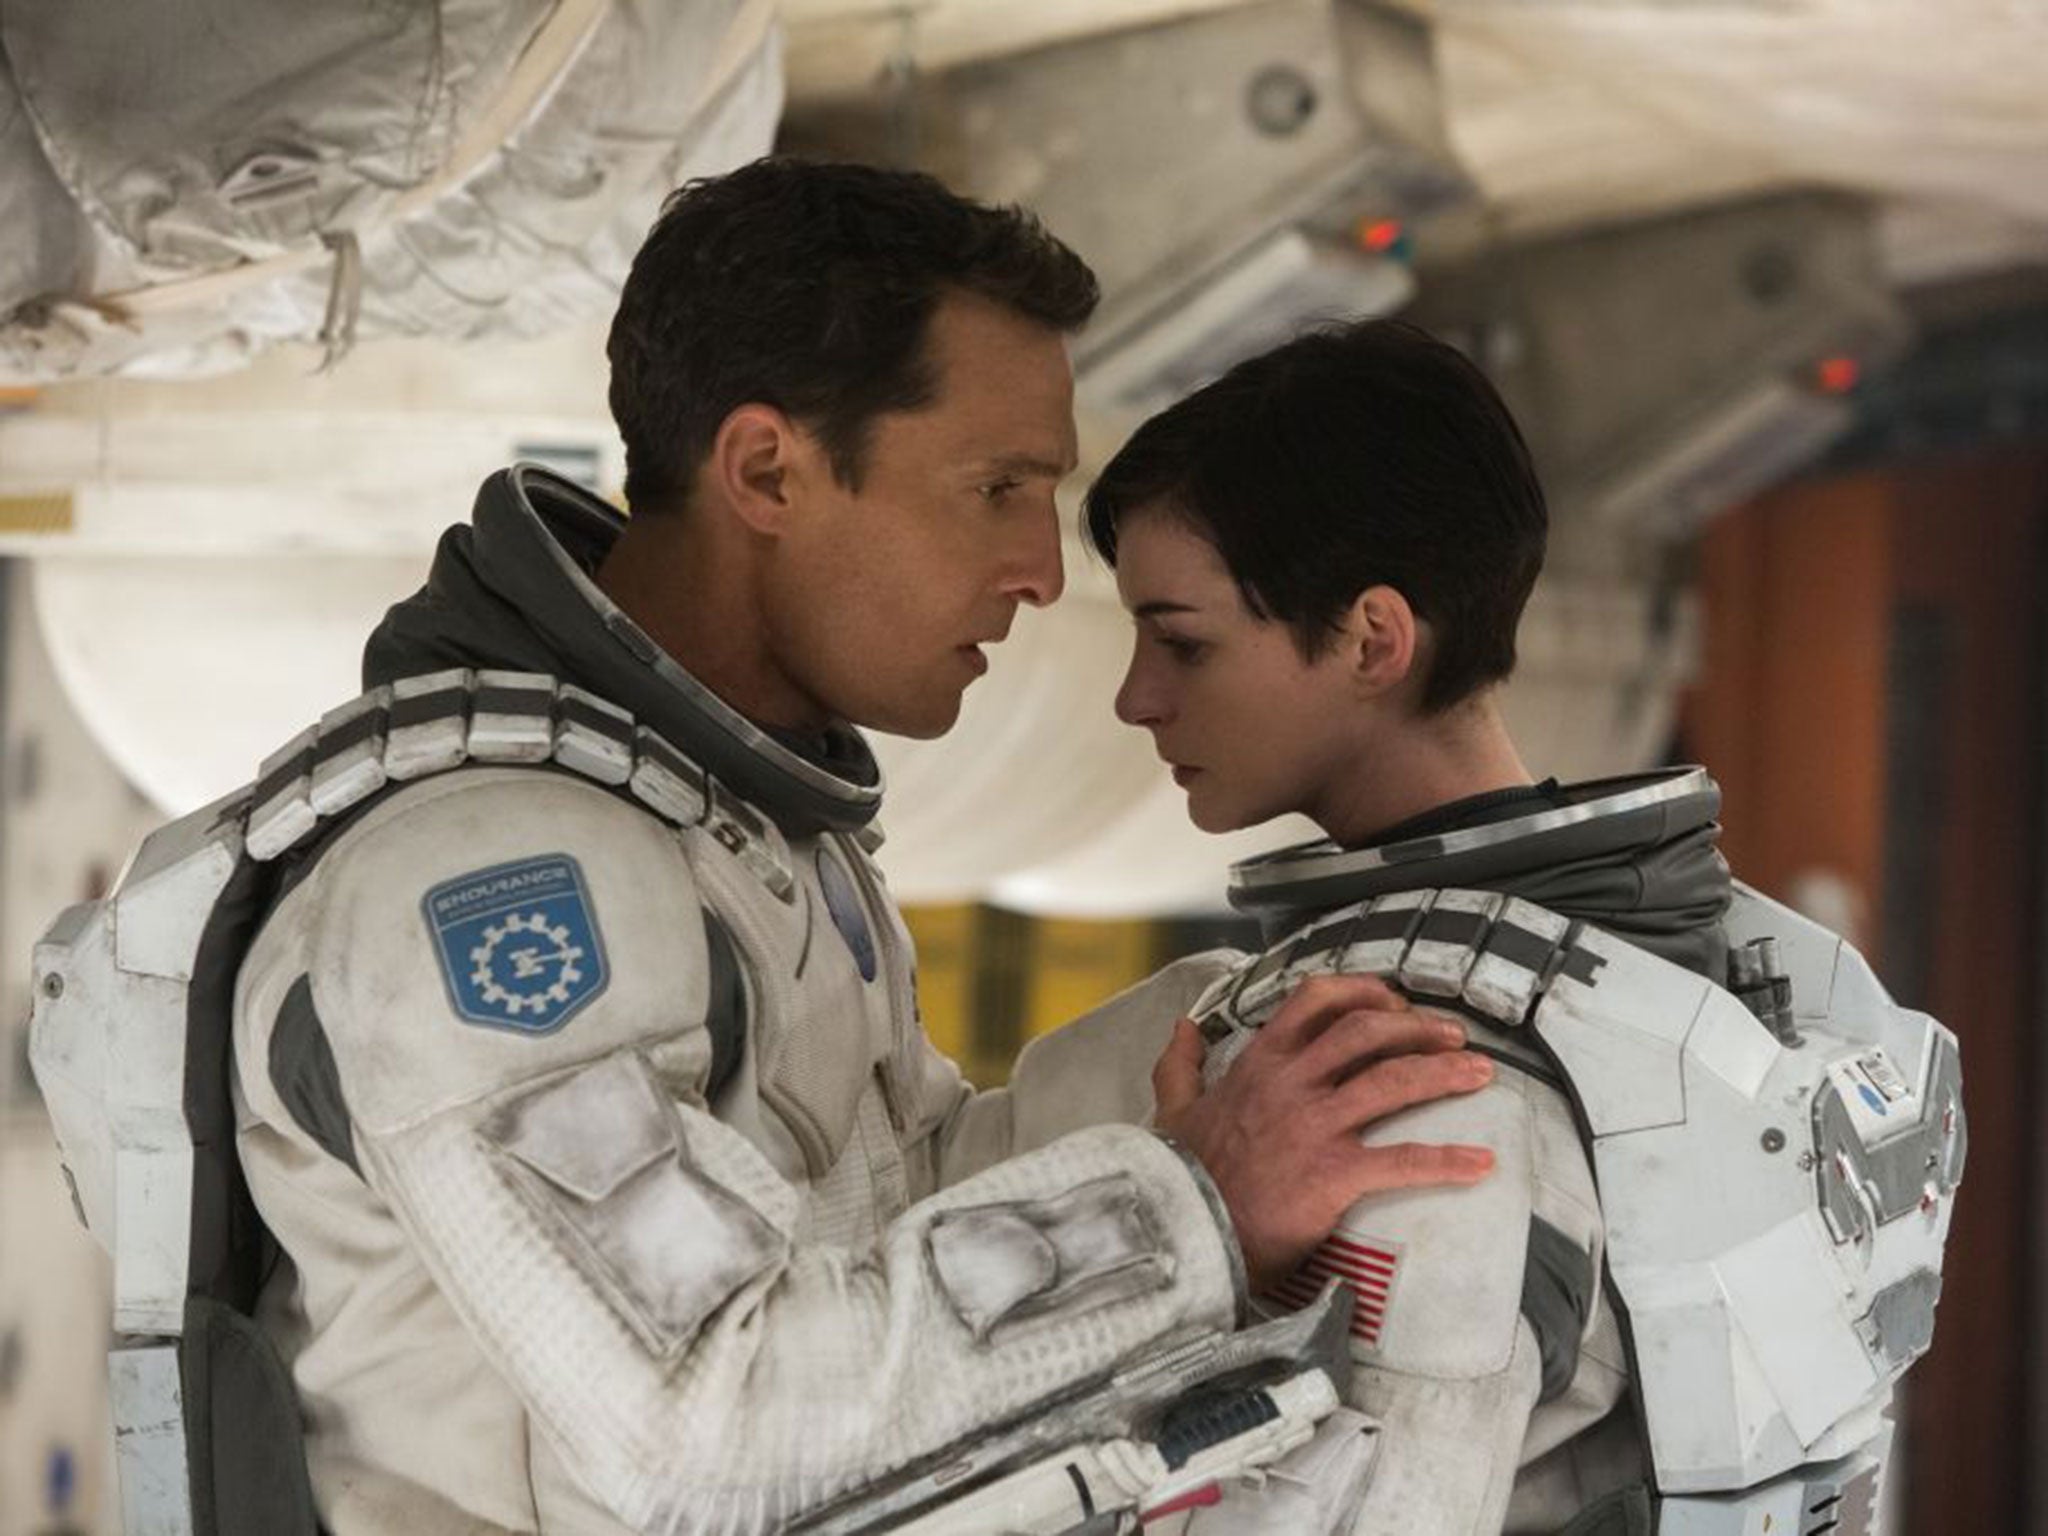 Matthew McConaughey and Anne Hathaway in Christopher Nolan's Interstellar